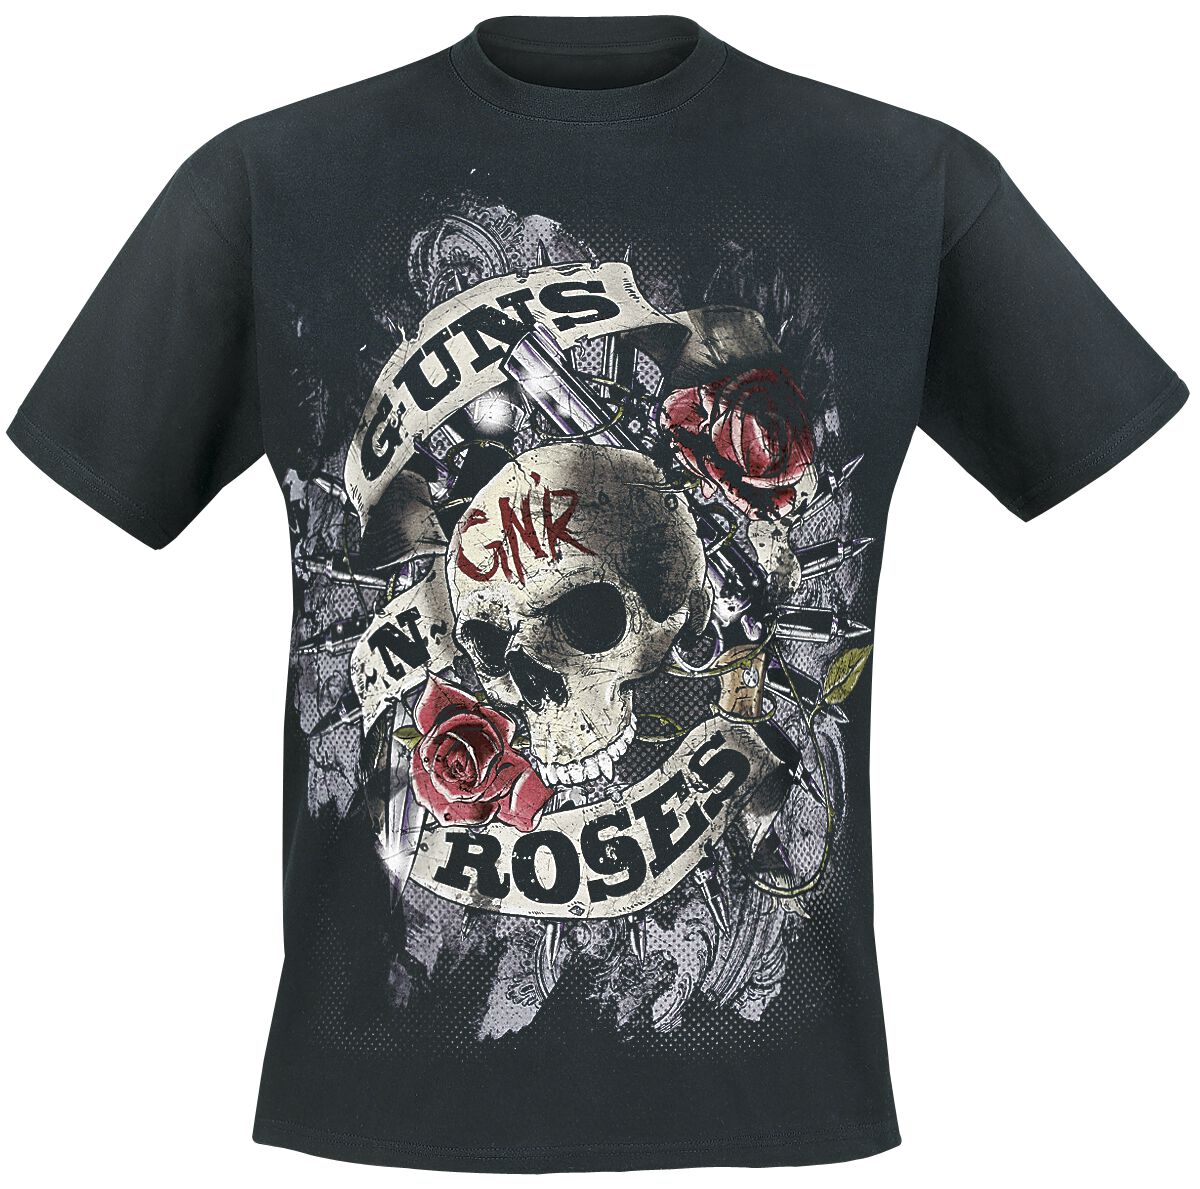 Guns N` Roses T-Shirt - Firepower - S bis 5XL - für Männer - Größe 4XL - schwarz  - Lizenziertes Merchandise!